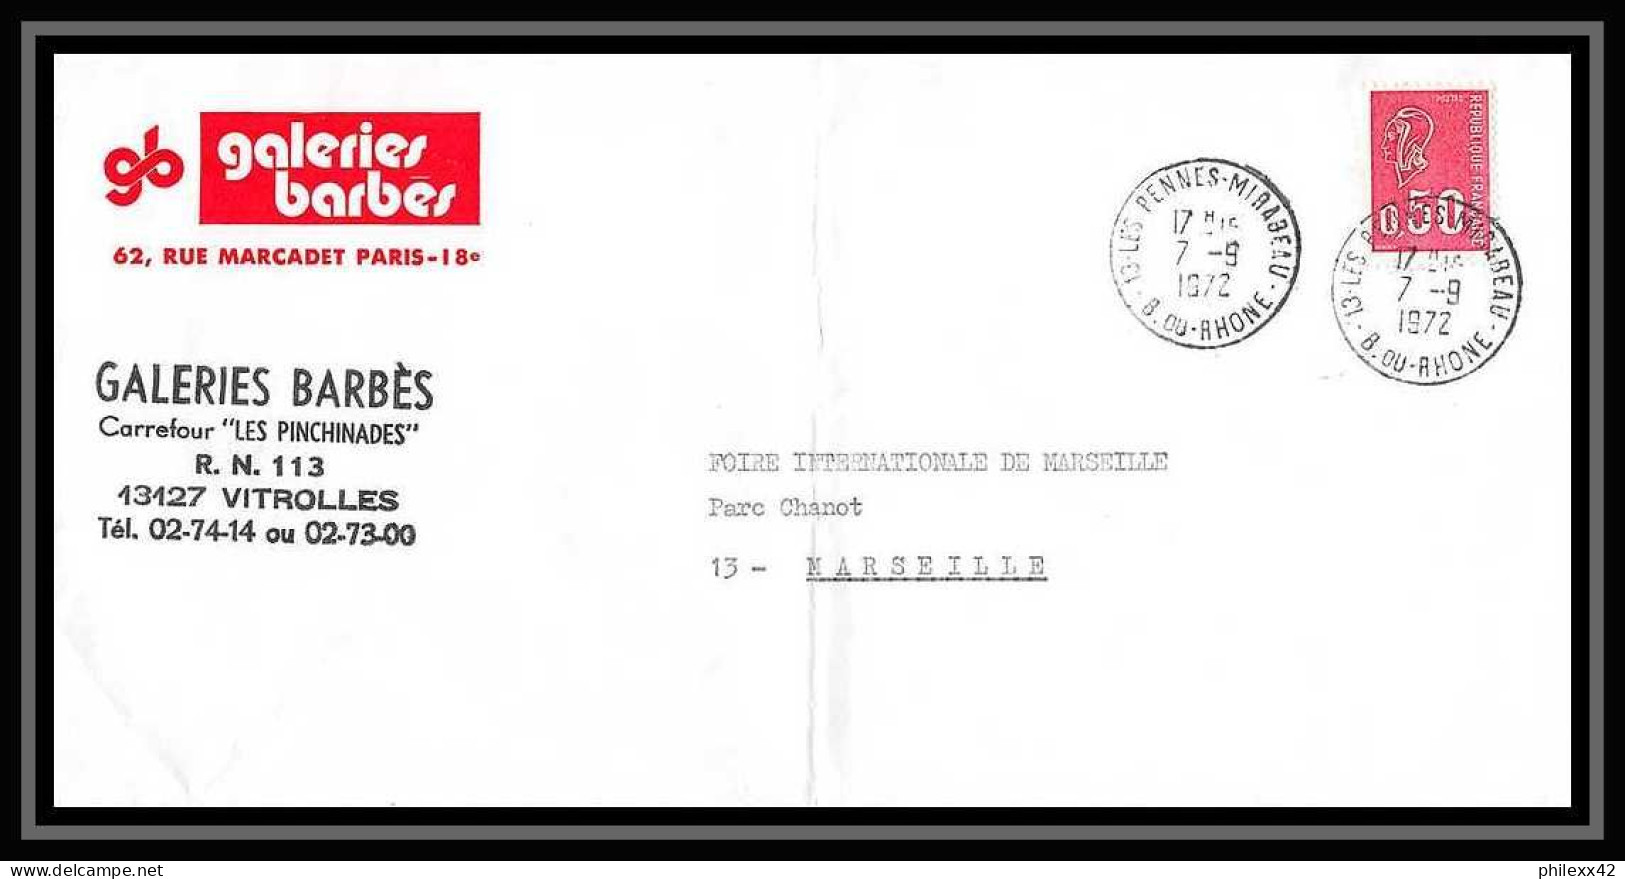 114298 lot de 10 Lettres + divers cover Bouches du rhone Les Pennes-Mirabeau